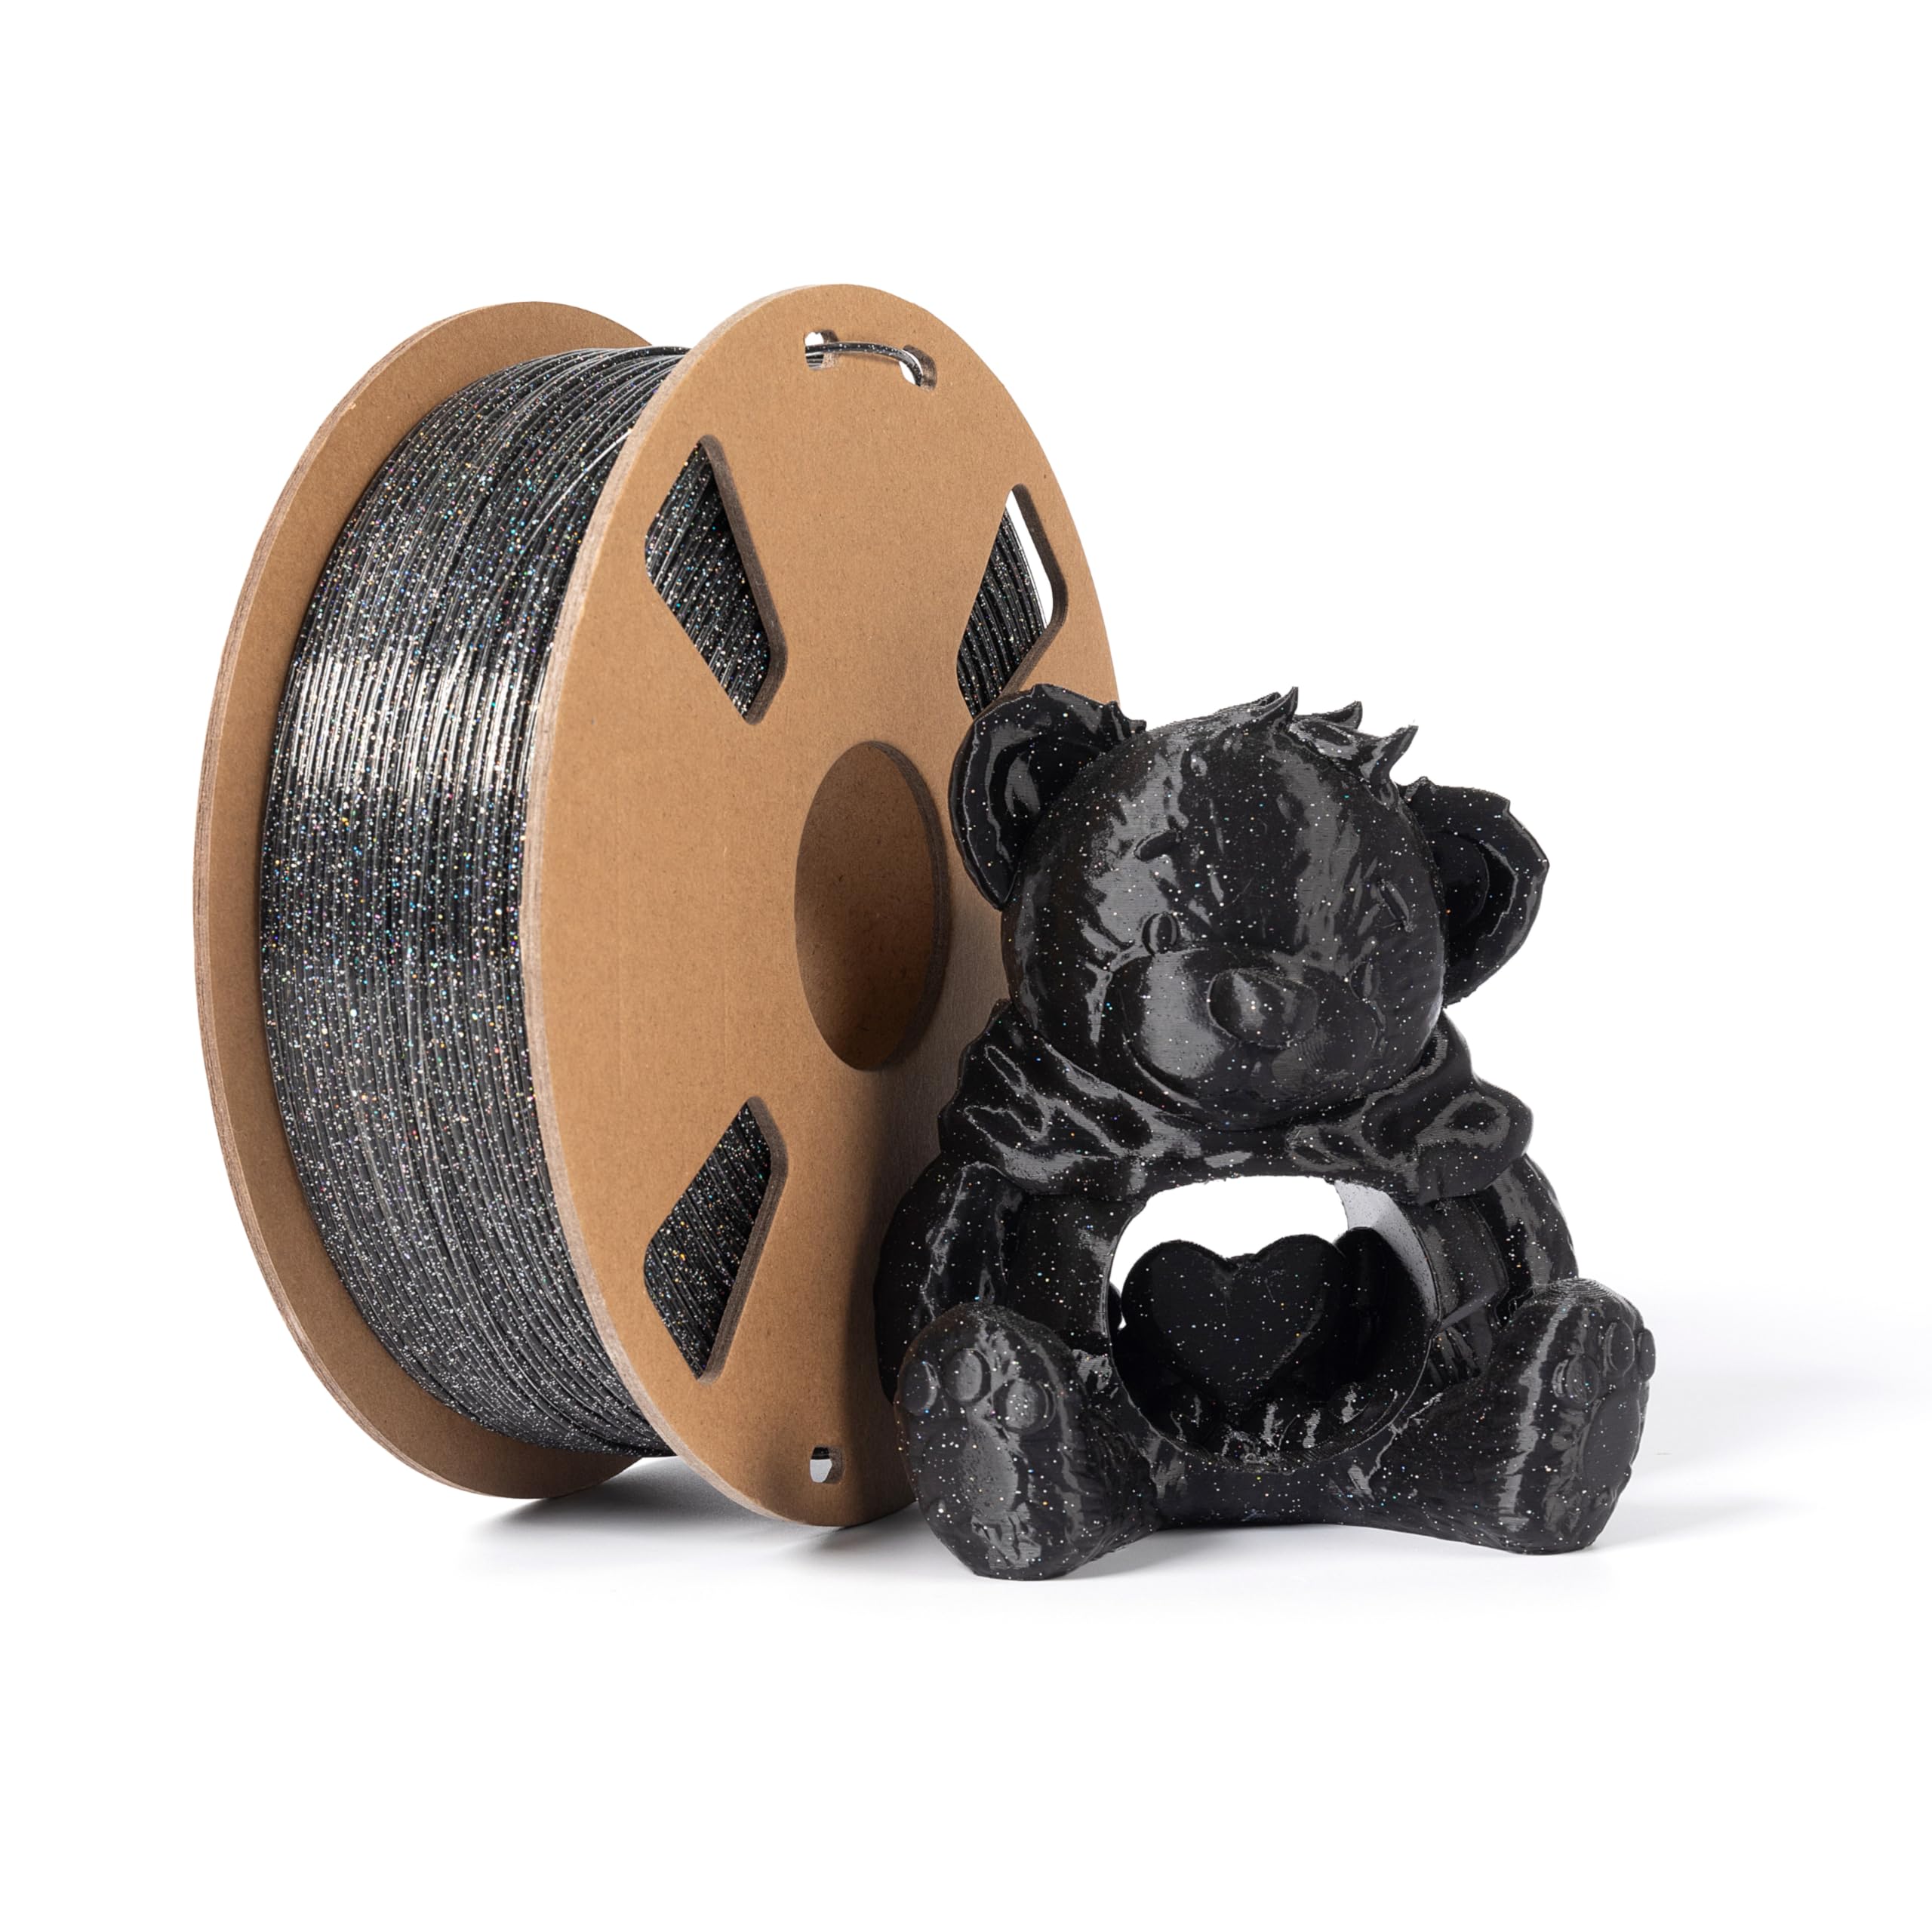 PLA-Filament, 1,75 mm, Galaxy Black, 1 kg, glänzendes 3D-Drucker-Filament, Maßgenauigkeit +/- 0,02 mm, 1 kg Spule, 3D-Druck-Filament für die meisten FDM-3D-Drucker